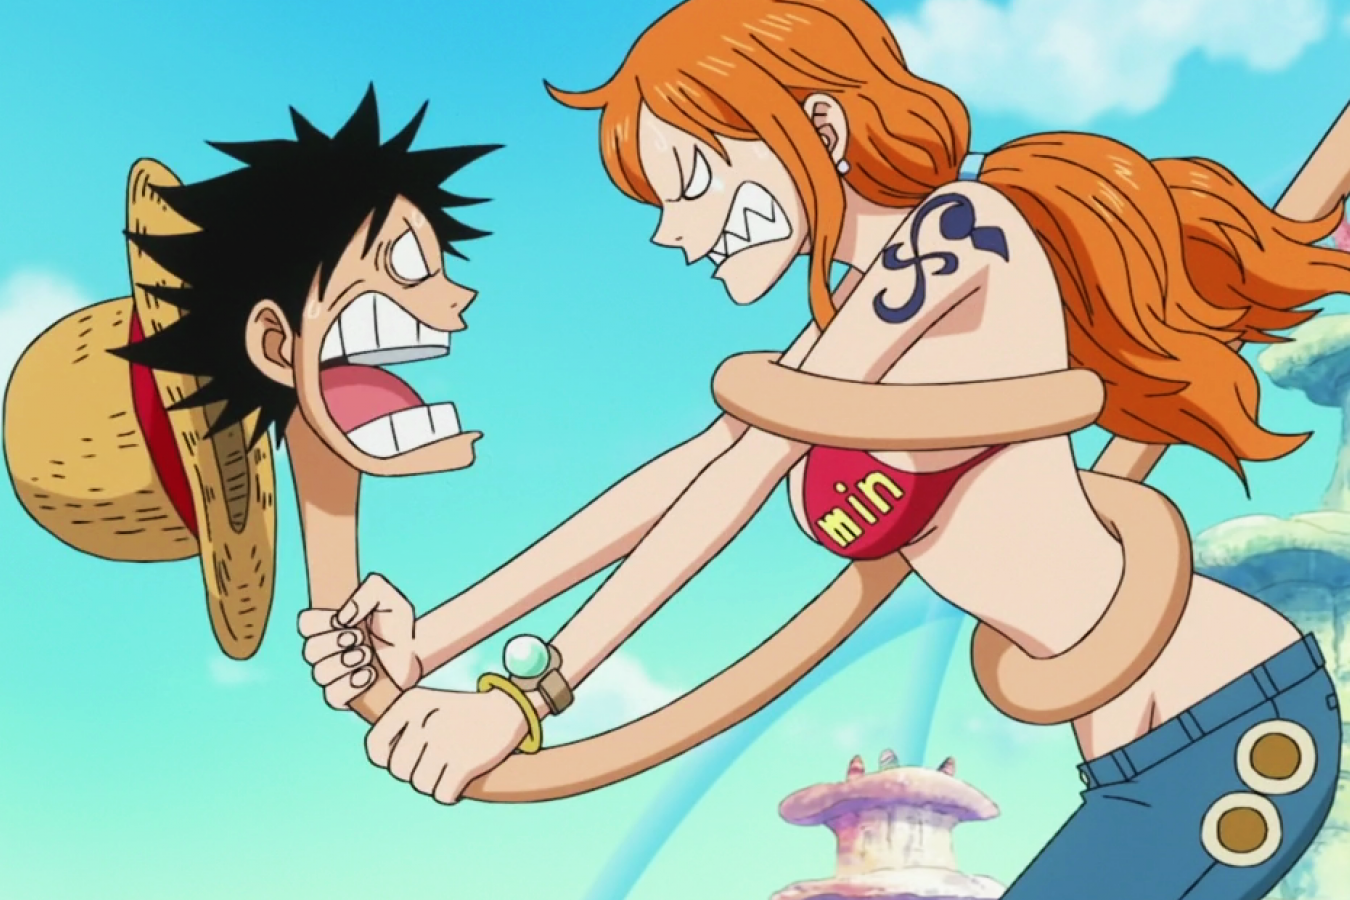 Nếu bạn là fan của One Piece thì chắc chắn bạn sẽ yêu thích Nami - một nhân vật phụ nổi tiếng trong truyện. Những lí do để yêu thích cô ấy là vô số, từ sự quyến rũ đến khả năng chiến đấu của cô. Hãy xem hình ảnh của Nami để hiểu rõ hơn về cô.